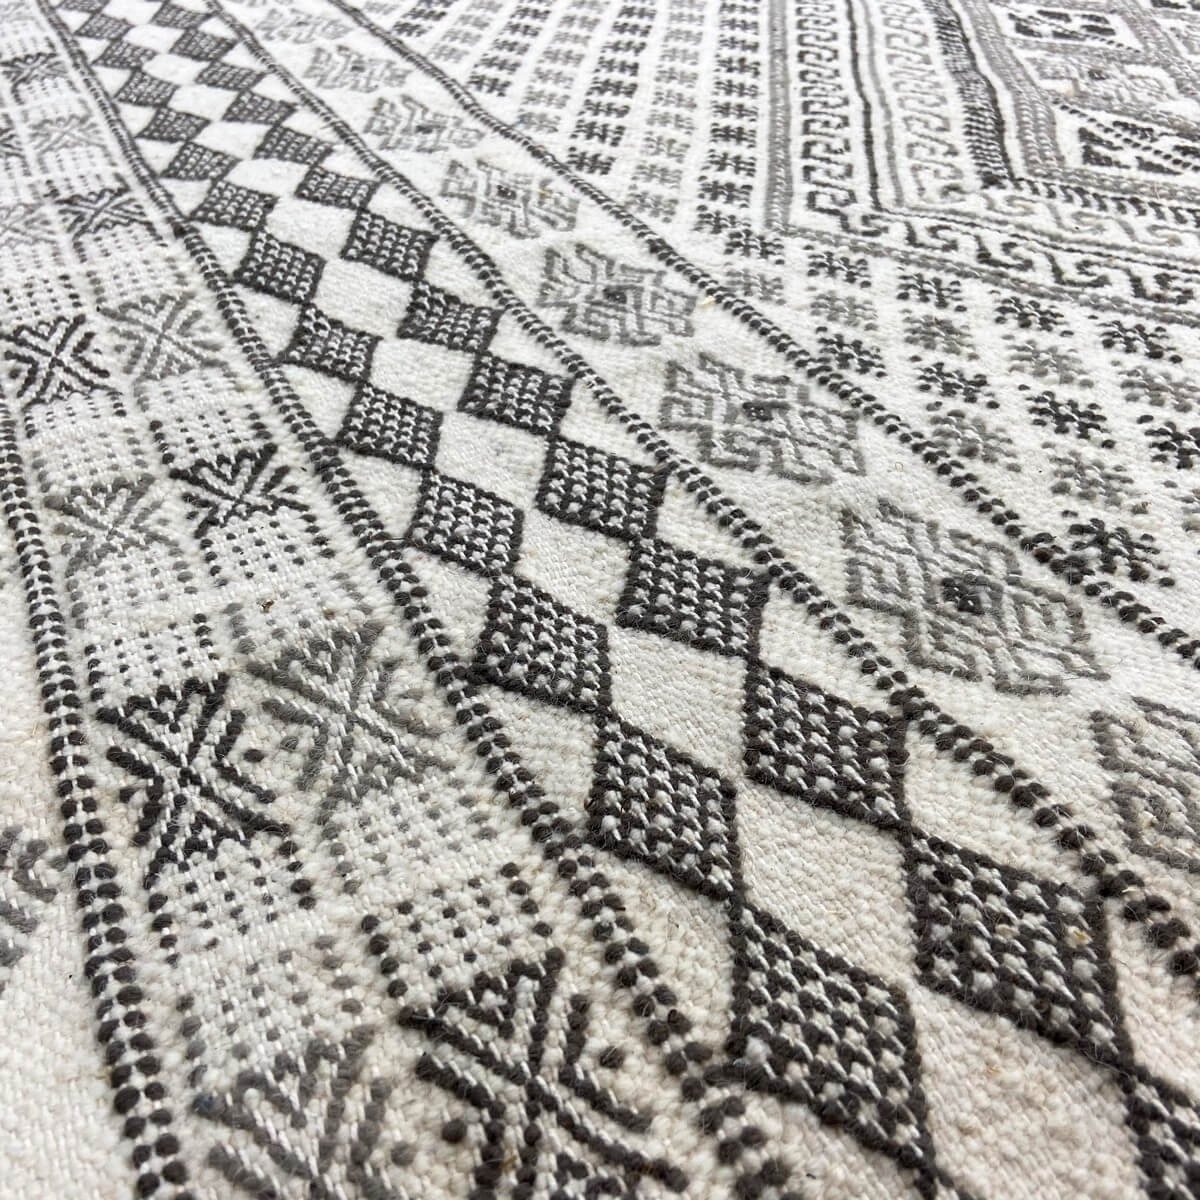 Berber tapijt Groot Tapijt Margoum Samssa 170x250 cm Zwart Wit Grijs (Handgeweven, Wol, Tunesië) Tunesisch Margoum Tapijt uit de